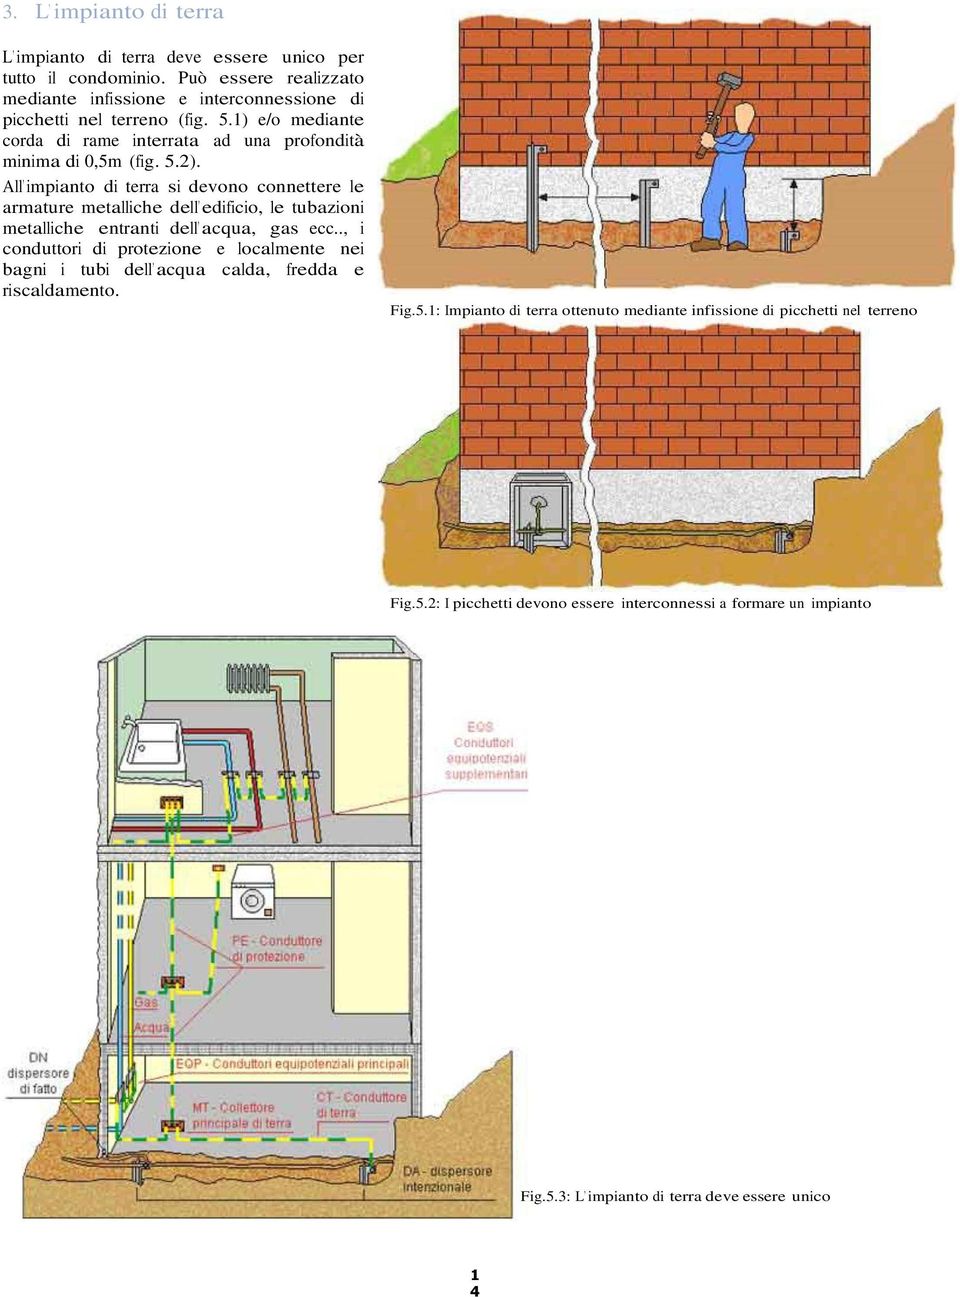 All impianto di terra si devono connettere le armature metalliche dell edificio, le tubazioni metalliche entranti dell acqua, gas ecc.